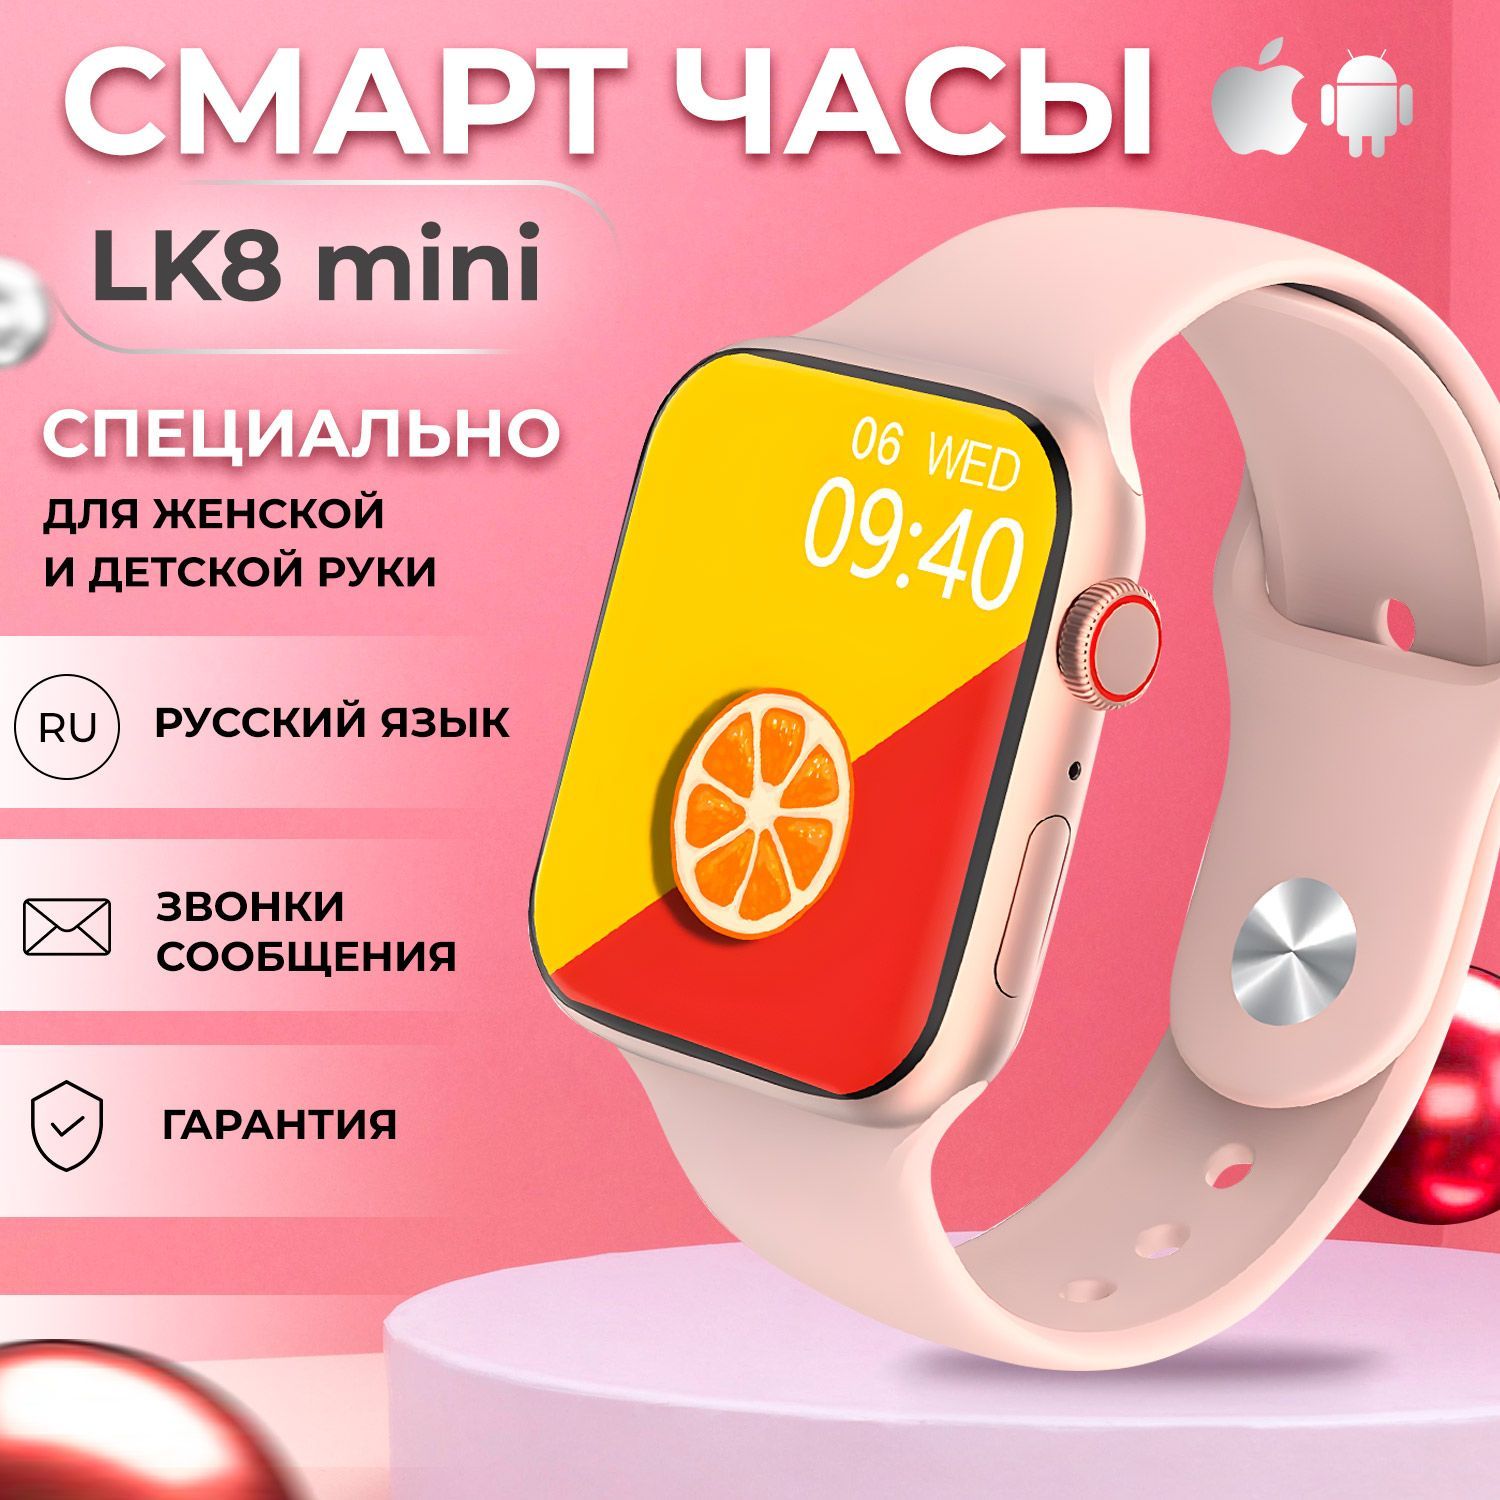 Смарт часы lk8 pro. LK 8 Mini Smart watch. Детские смарт часы lk9 Mini или lk8 Mini. Smart watch LK gt 4 Mini золотой. Смарт часы lk8 Mini или lk9 Mini какие лучше.